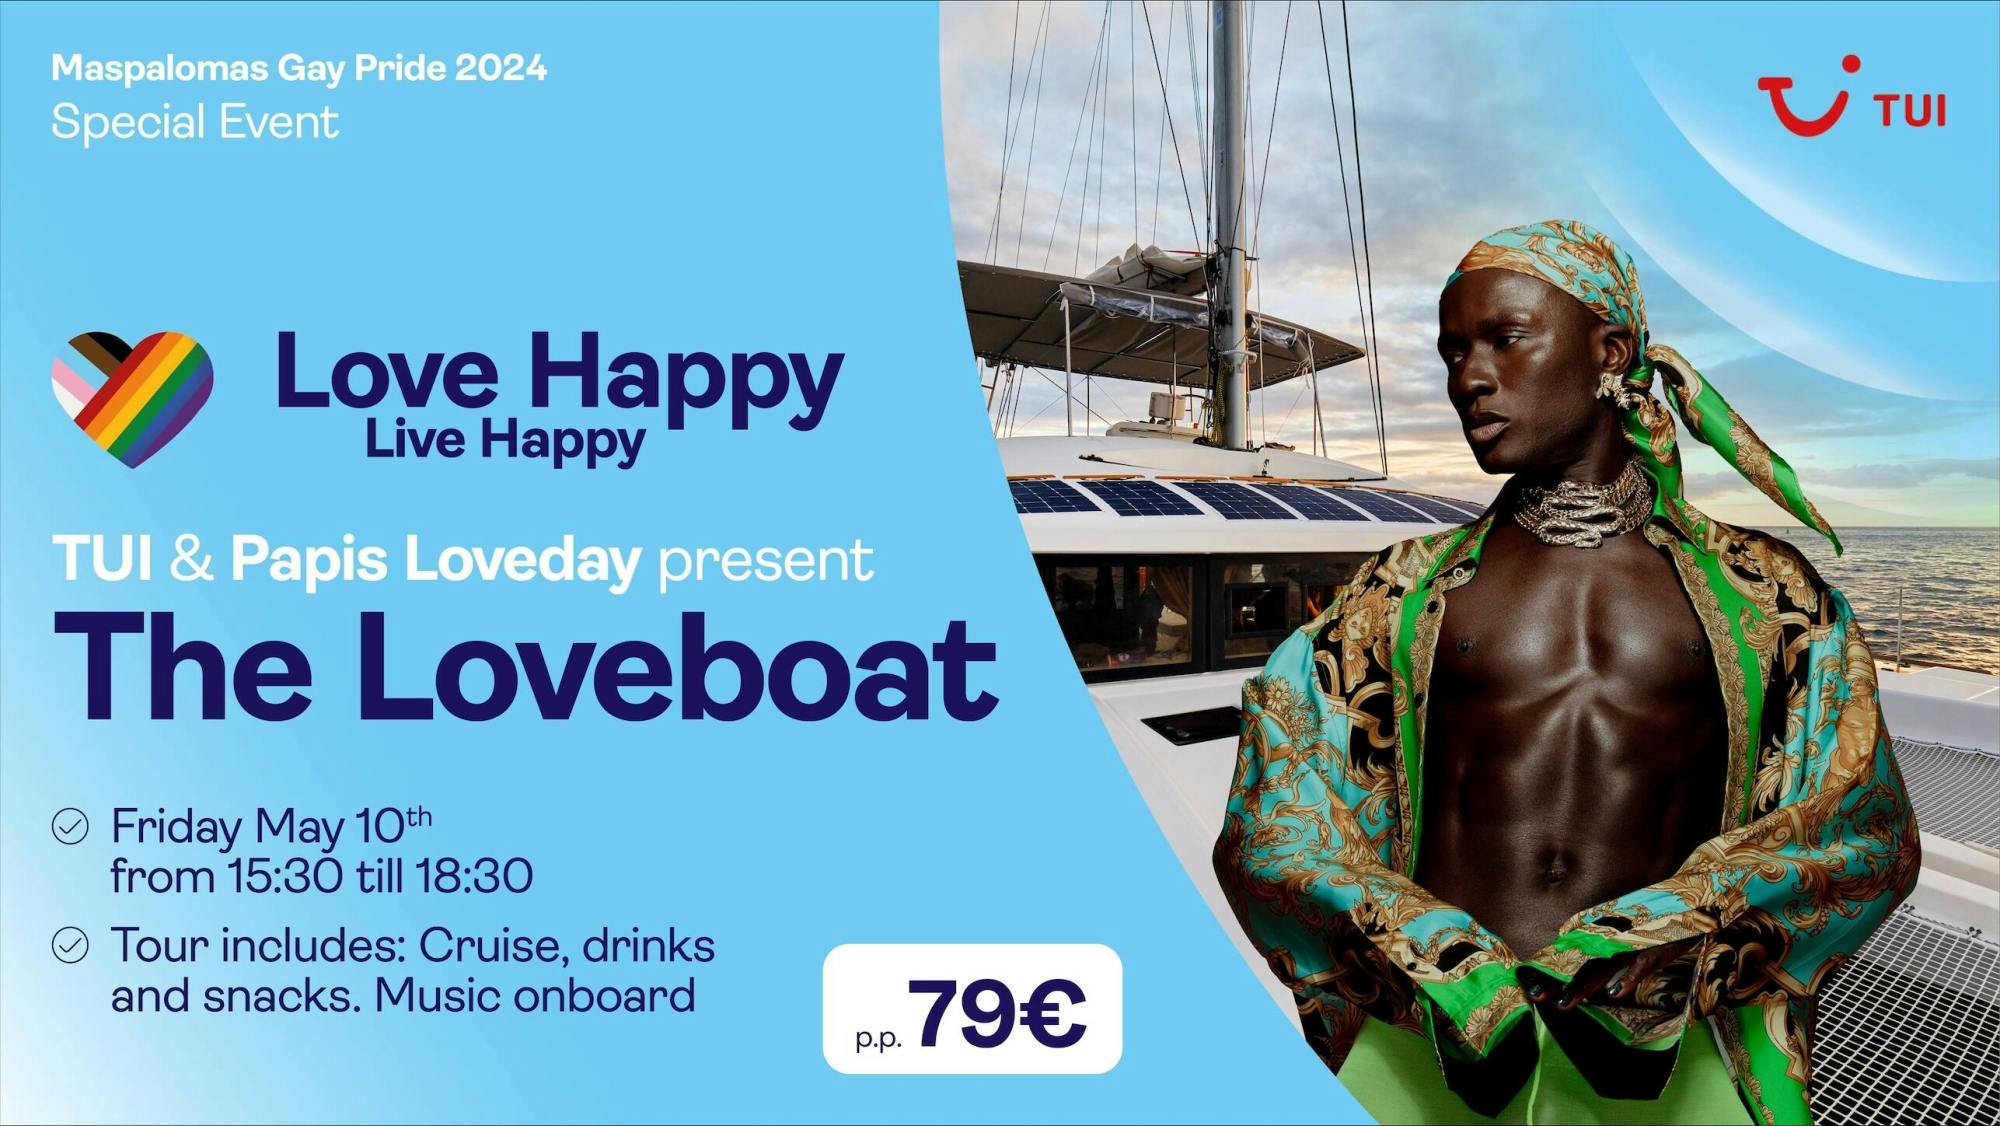 Maspalomas Pride 2023 – Papis Loveday – The Loveboat